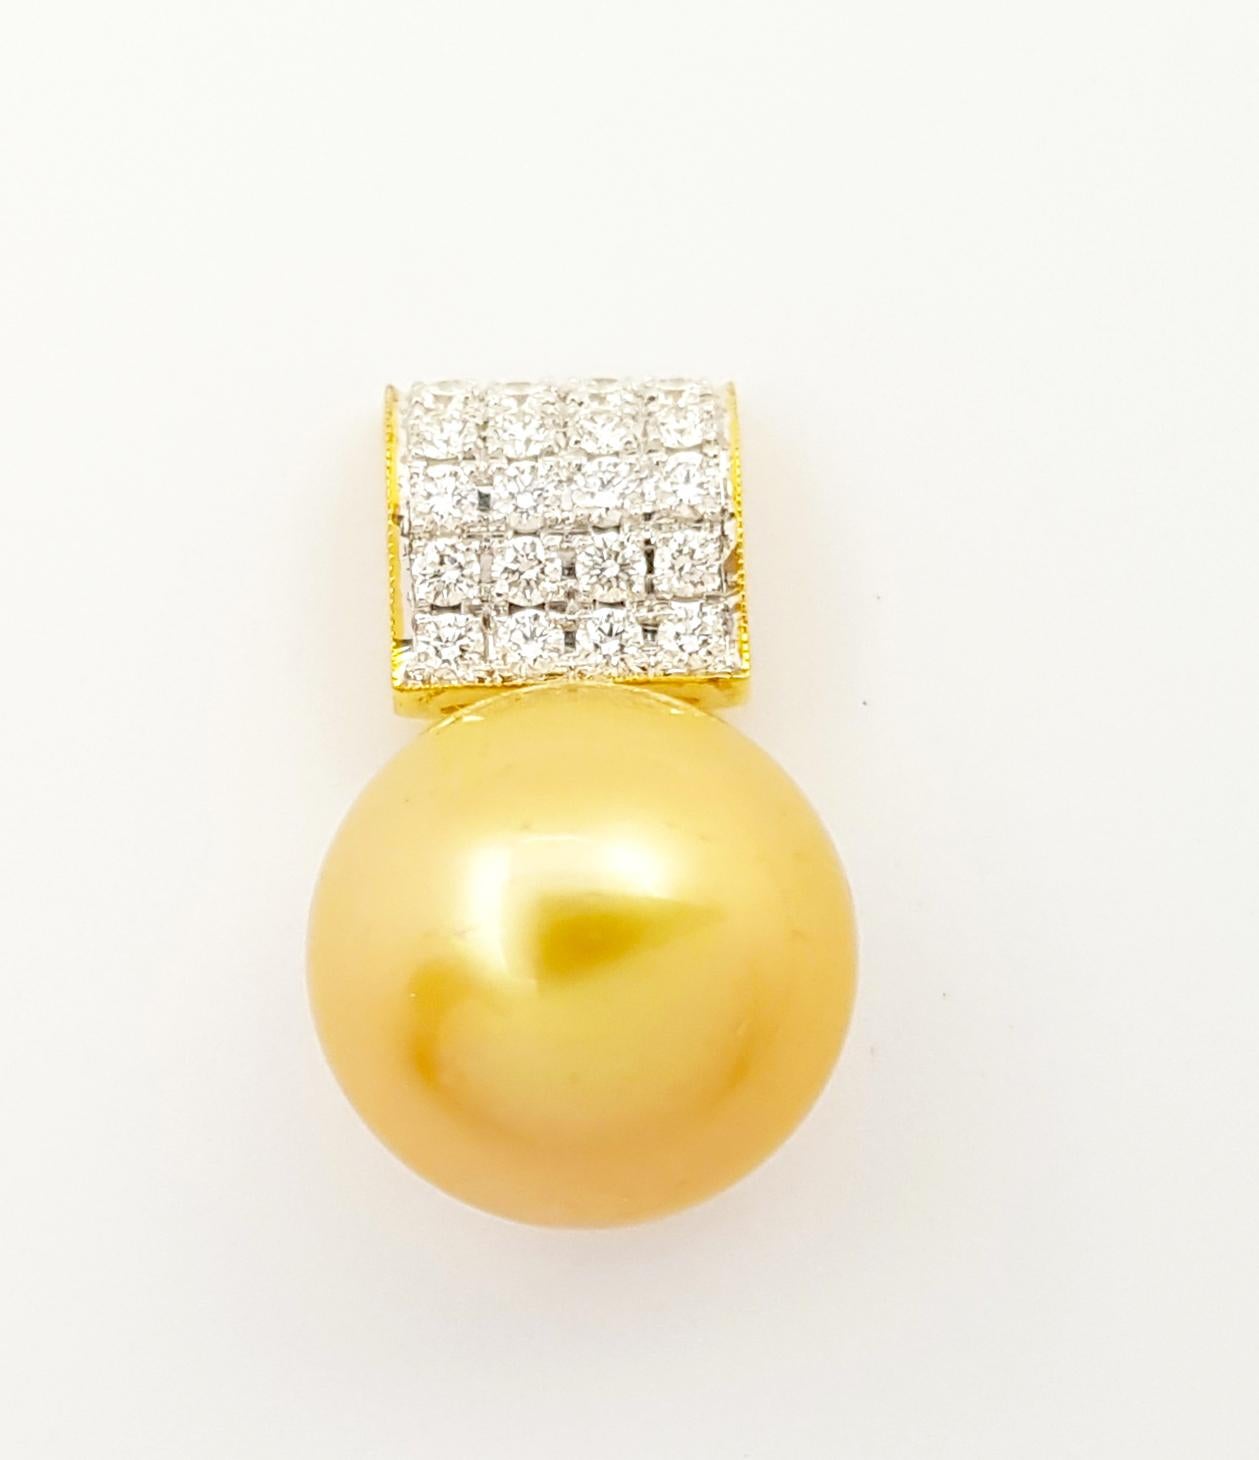 Pendentif en or rose 18 carats avec perle des mers du Sud et diamant de 0,50 carat
(chaîne non incluse)

Largeur : 1 cm 
Longueur : 2.3 cm
Poids total : 5,58 grammes

Perle de mer du Sud Approximativement : 13 mm

